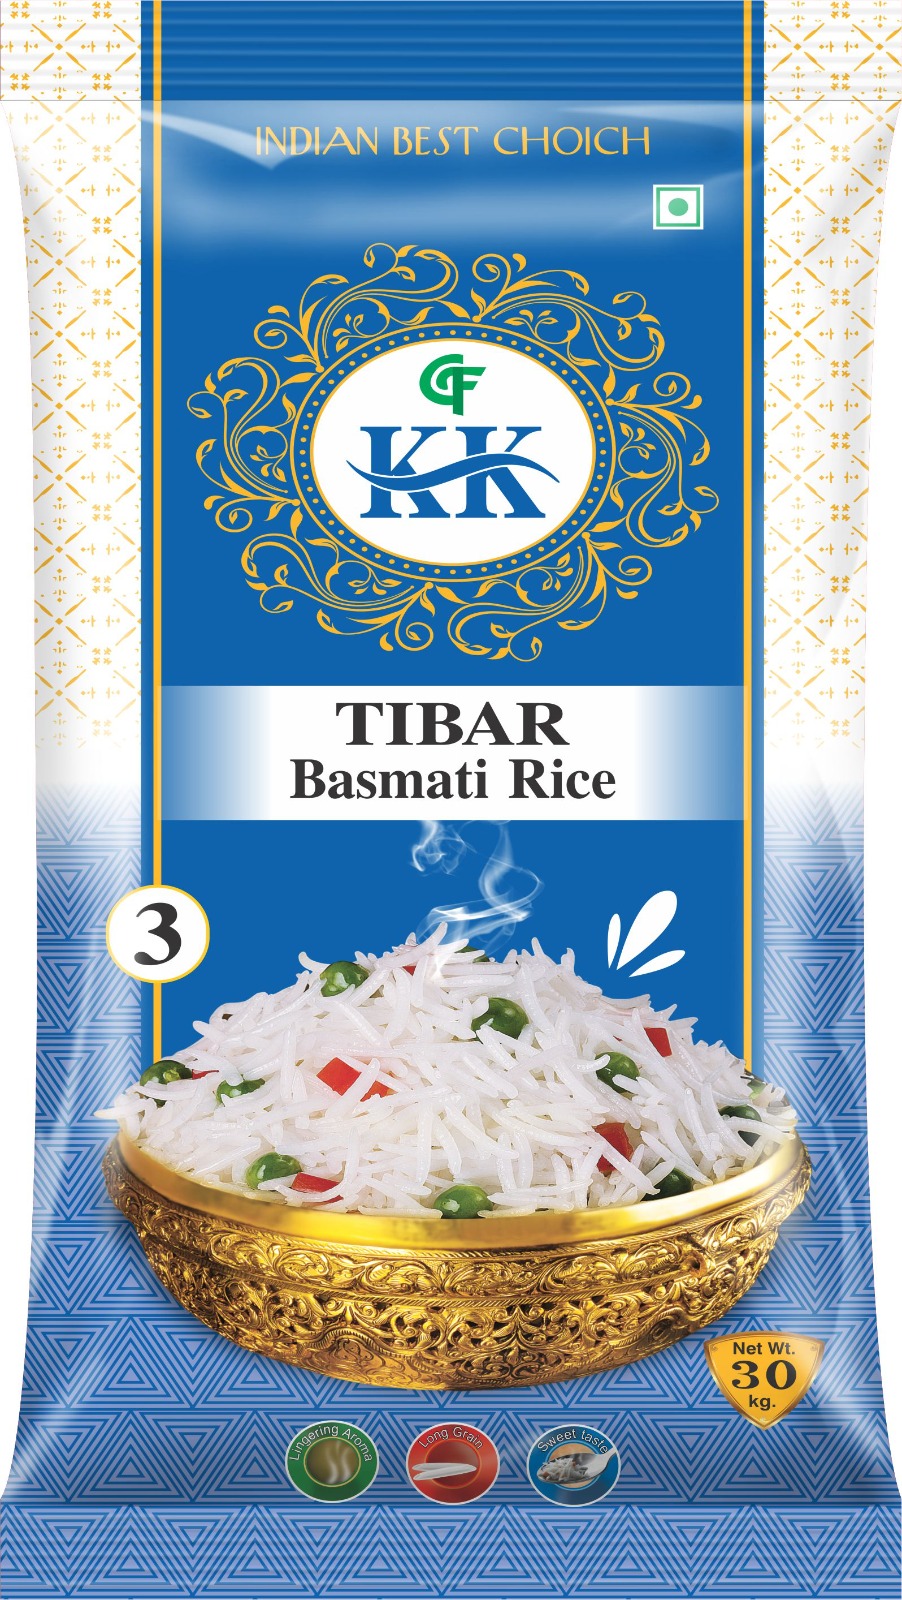 1401 Rice ( tibar basmati rice)